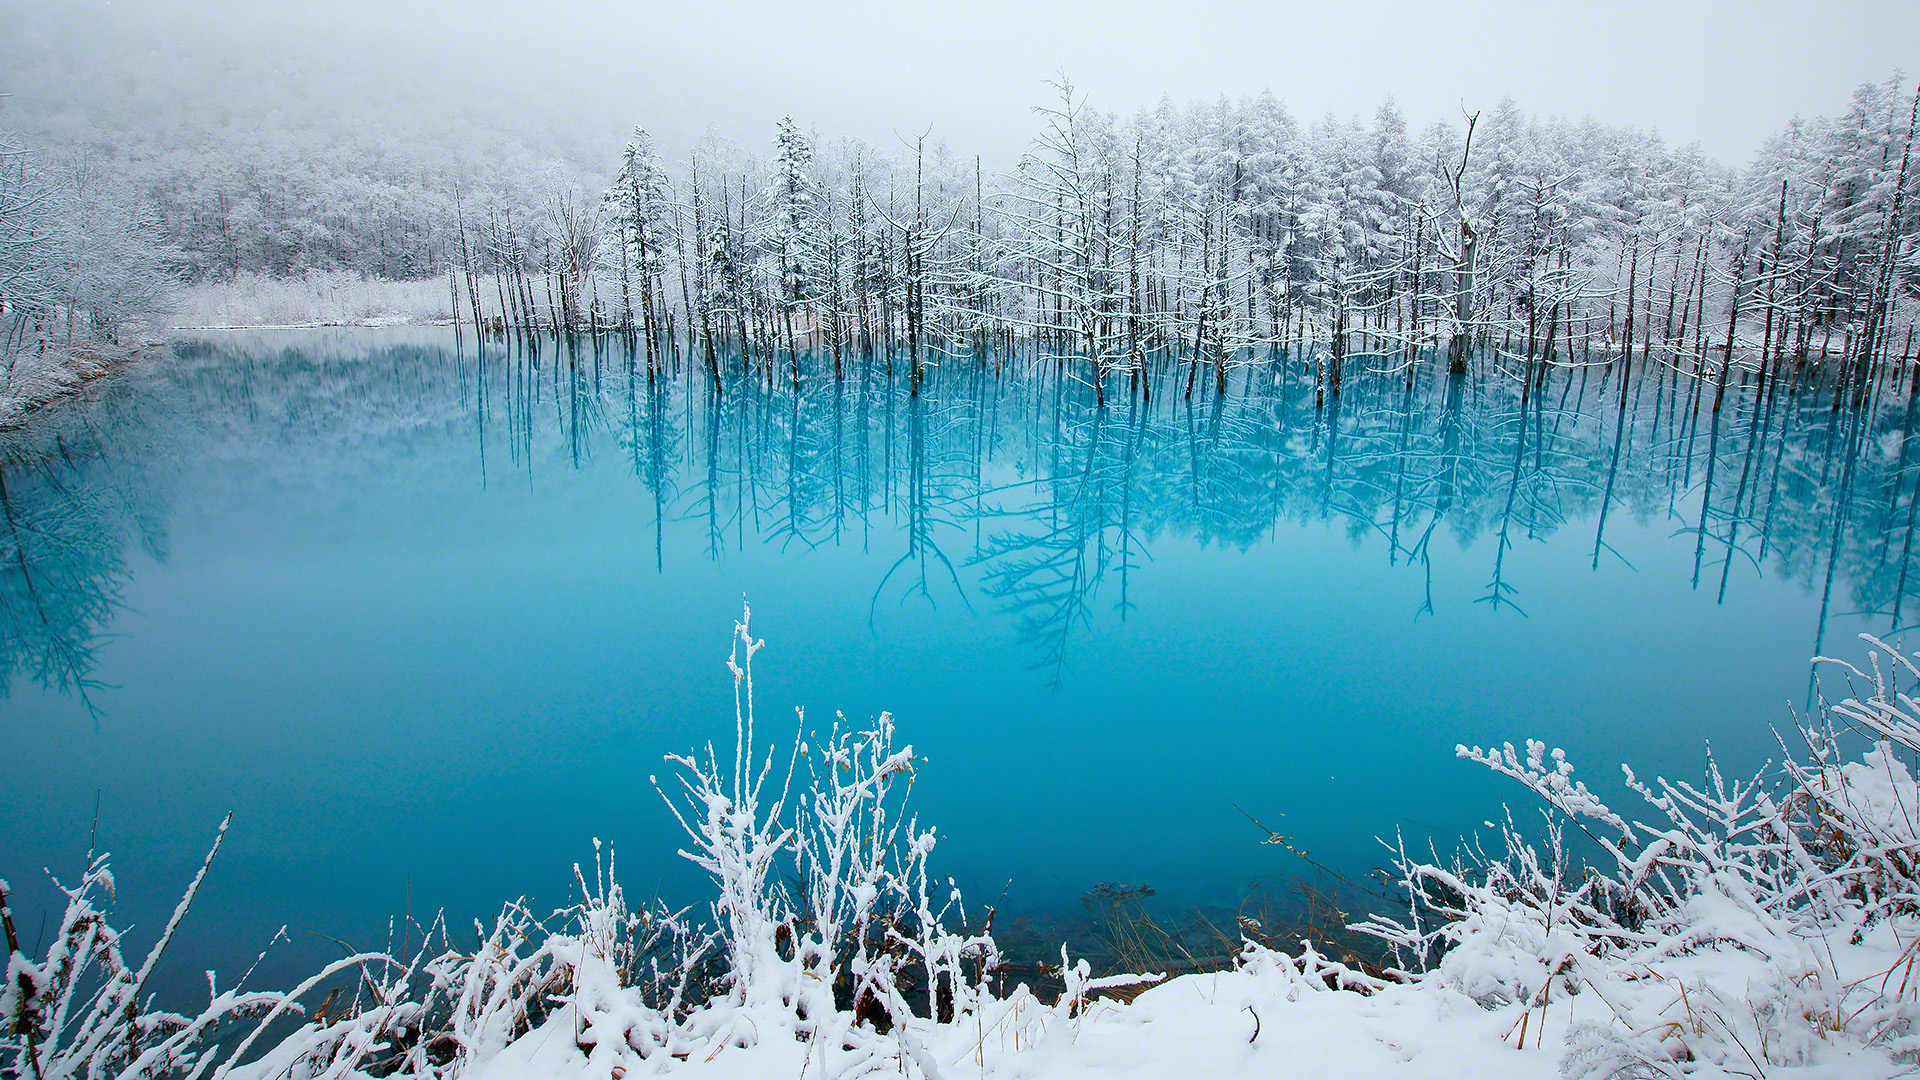 蓝色湖水 雪景 树林 北海道 冬天风景桌面壁纸 风景壁纸 壁纸下载 彼岸桌面